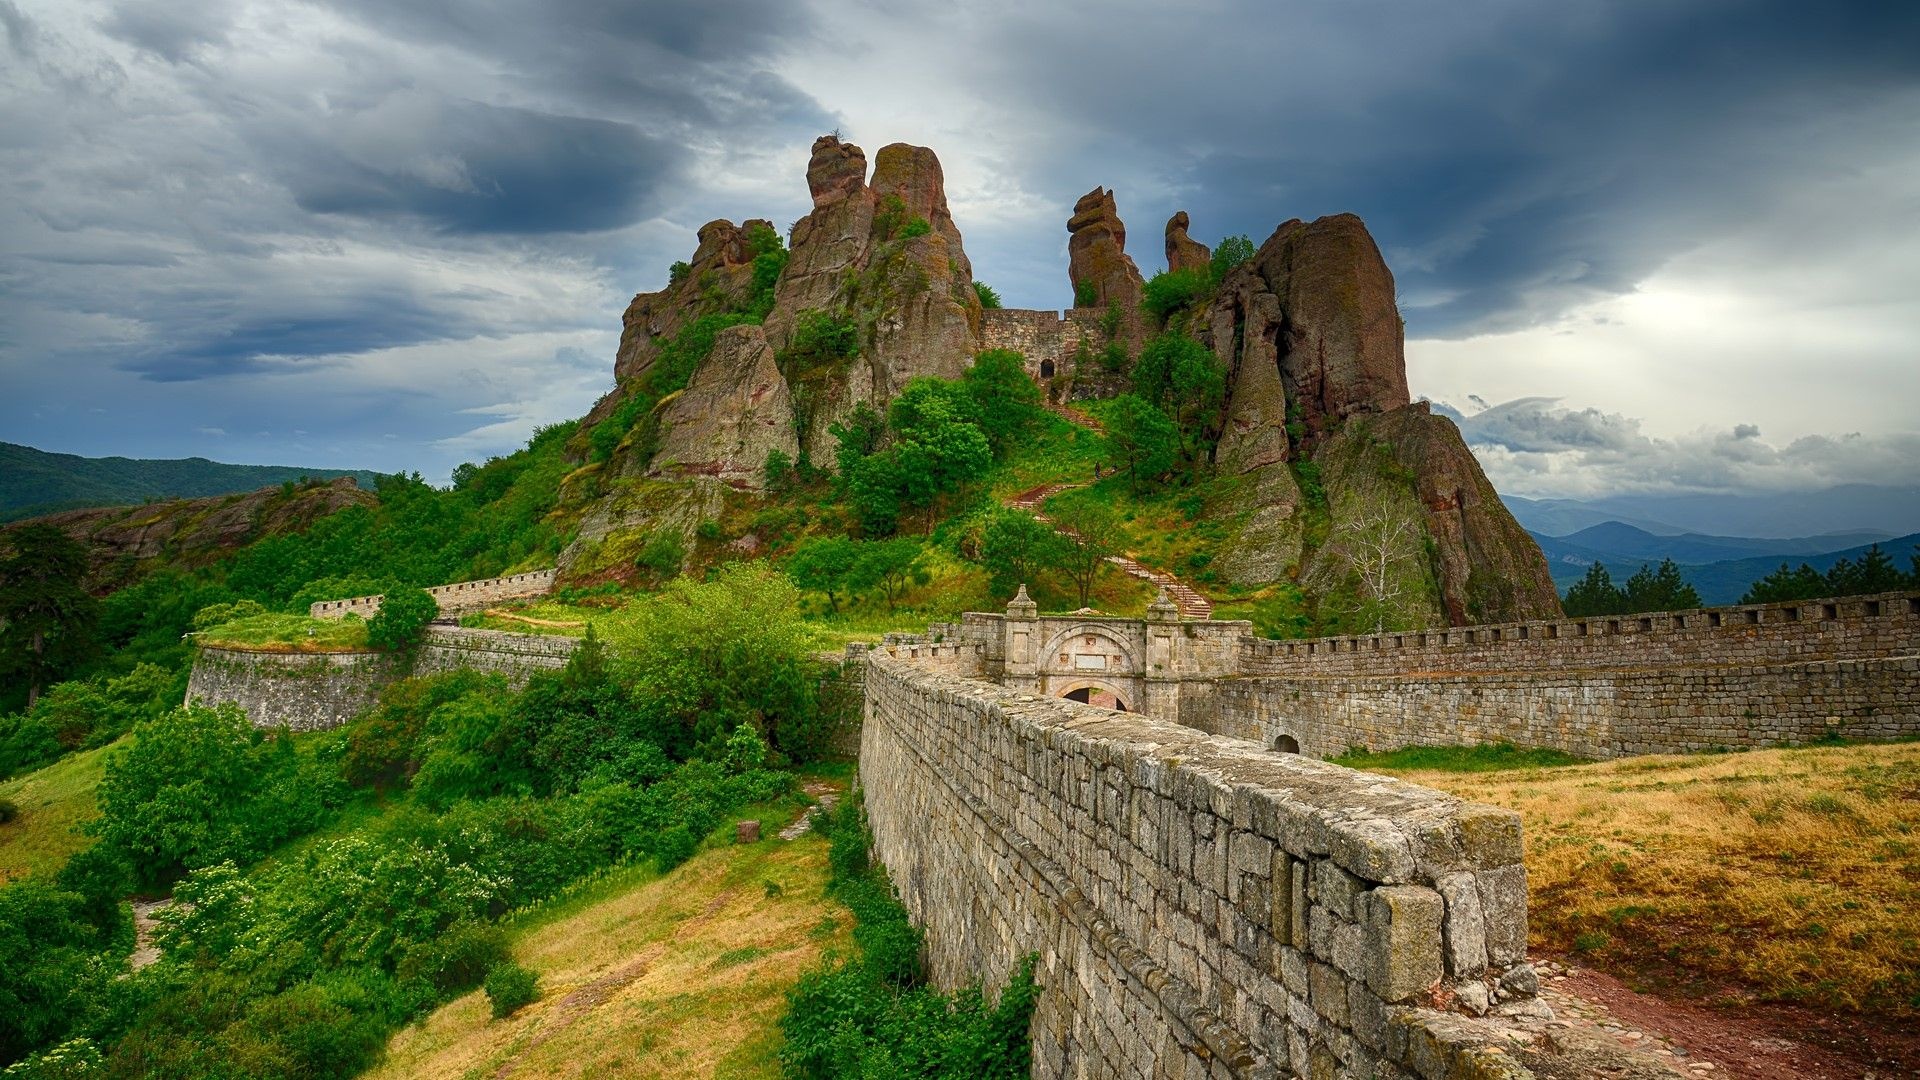 Monumental wonder, Bulgarian fortress, Scenic beauty, Traveler's dream, 1920x1080 Full HD Desktop